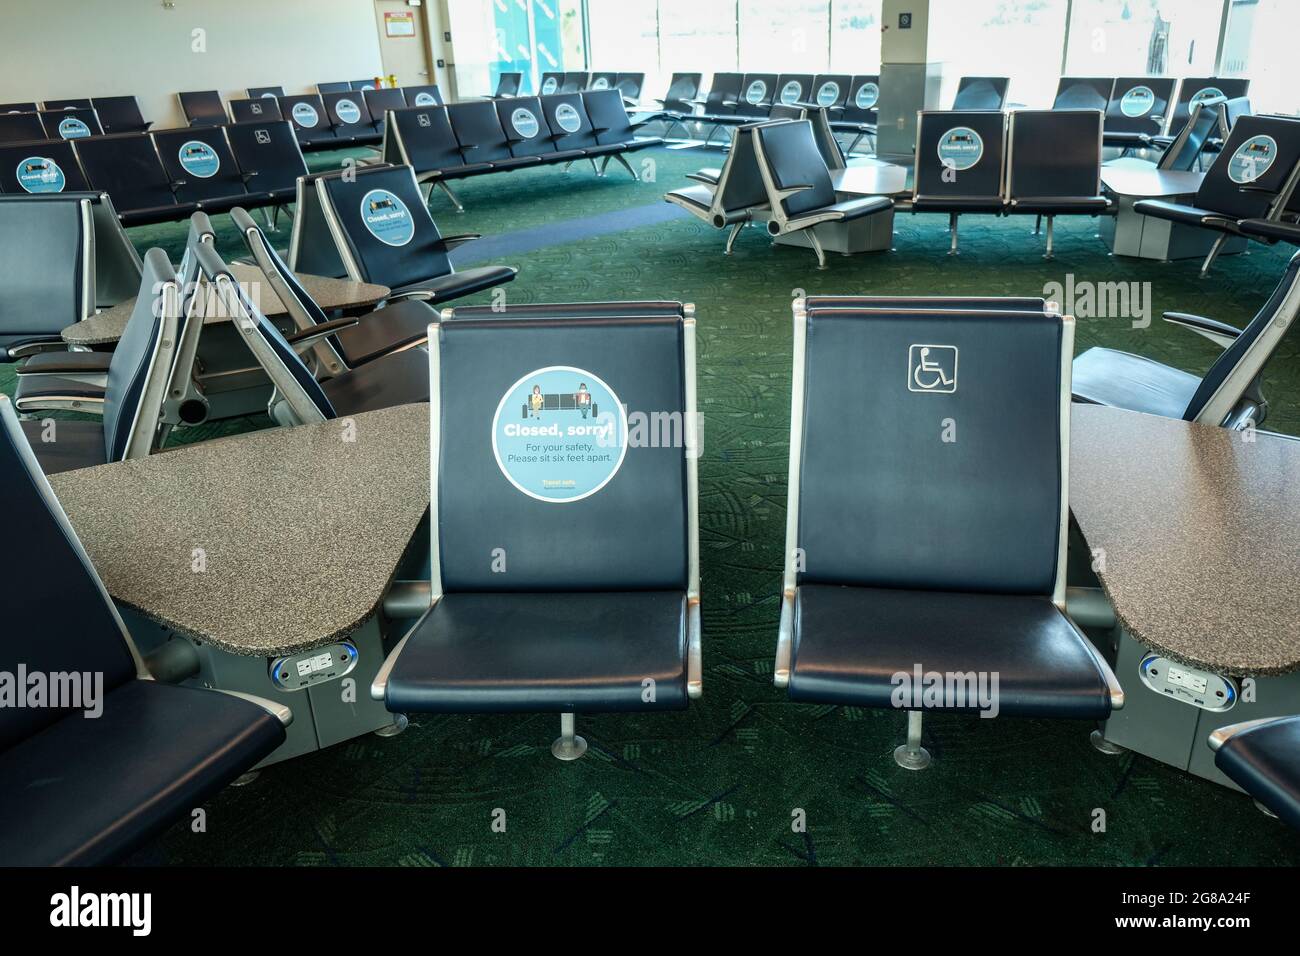 Sección de asientos cerrada durante la pandemia de COVID-19 en el aeropuerto de Portland, Oregón, conocido como PDX, Oregón, EE.UU. Foto de stock